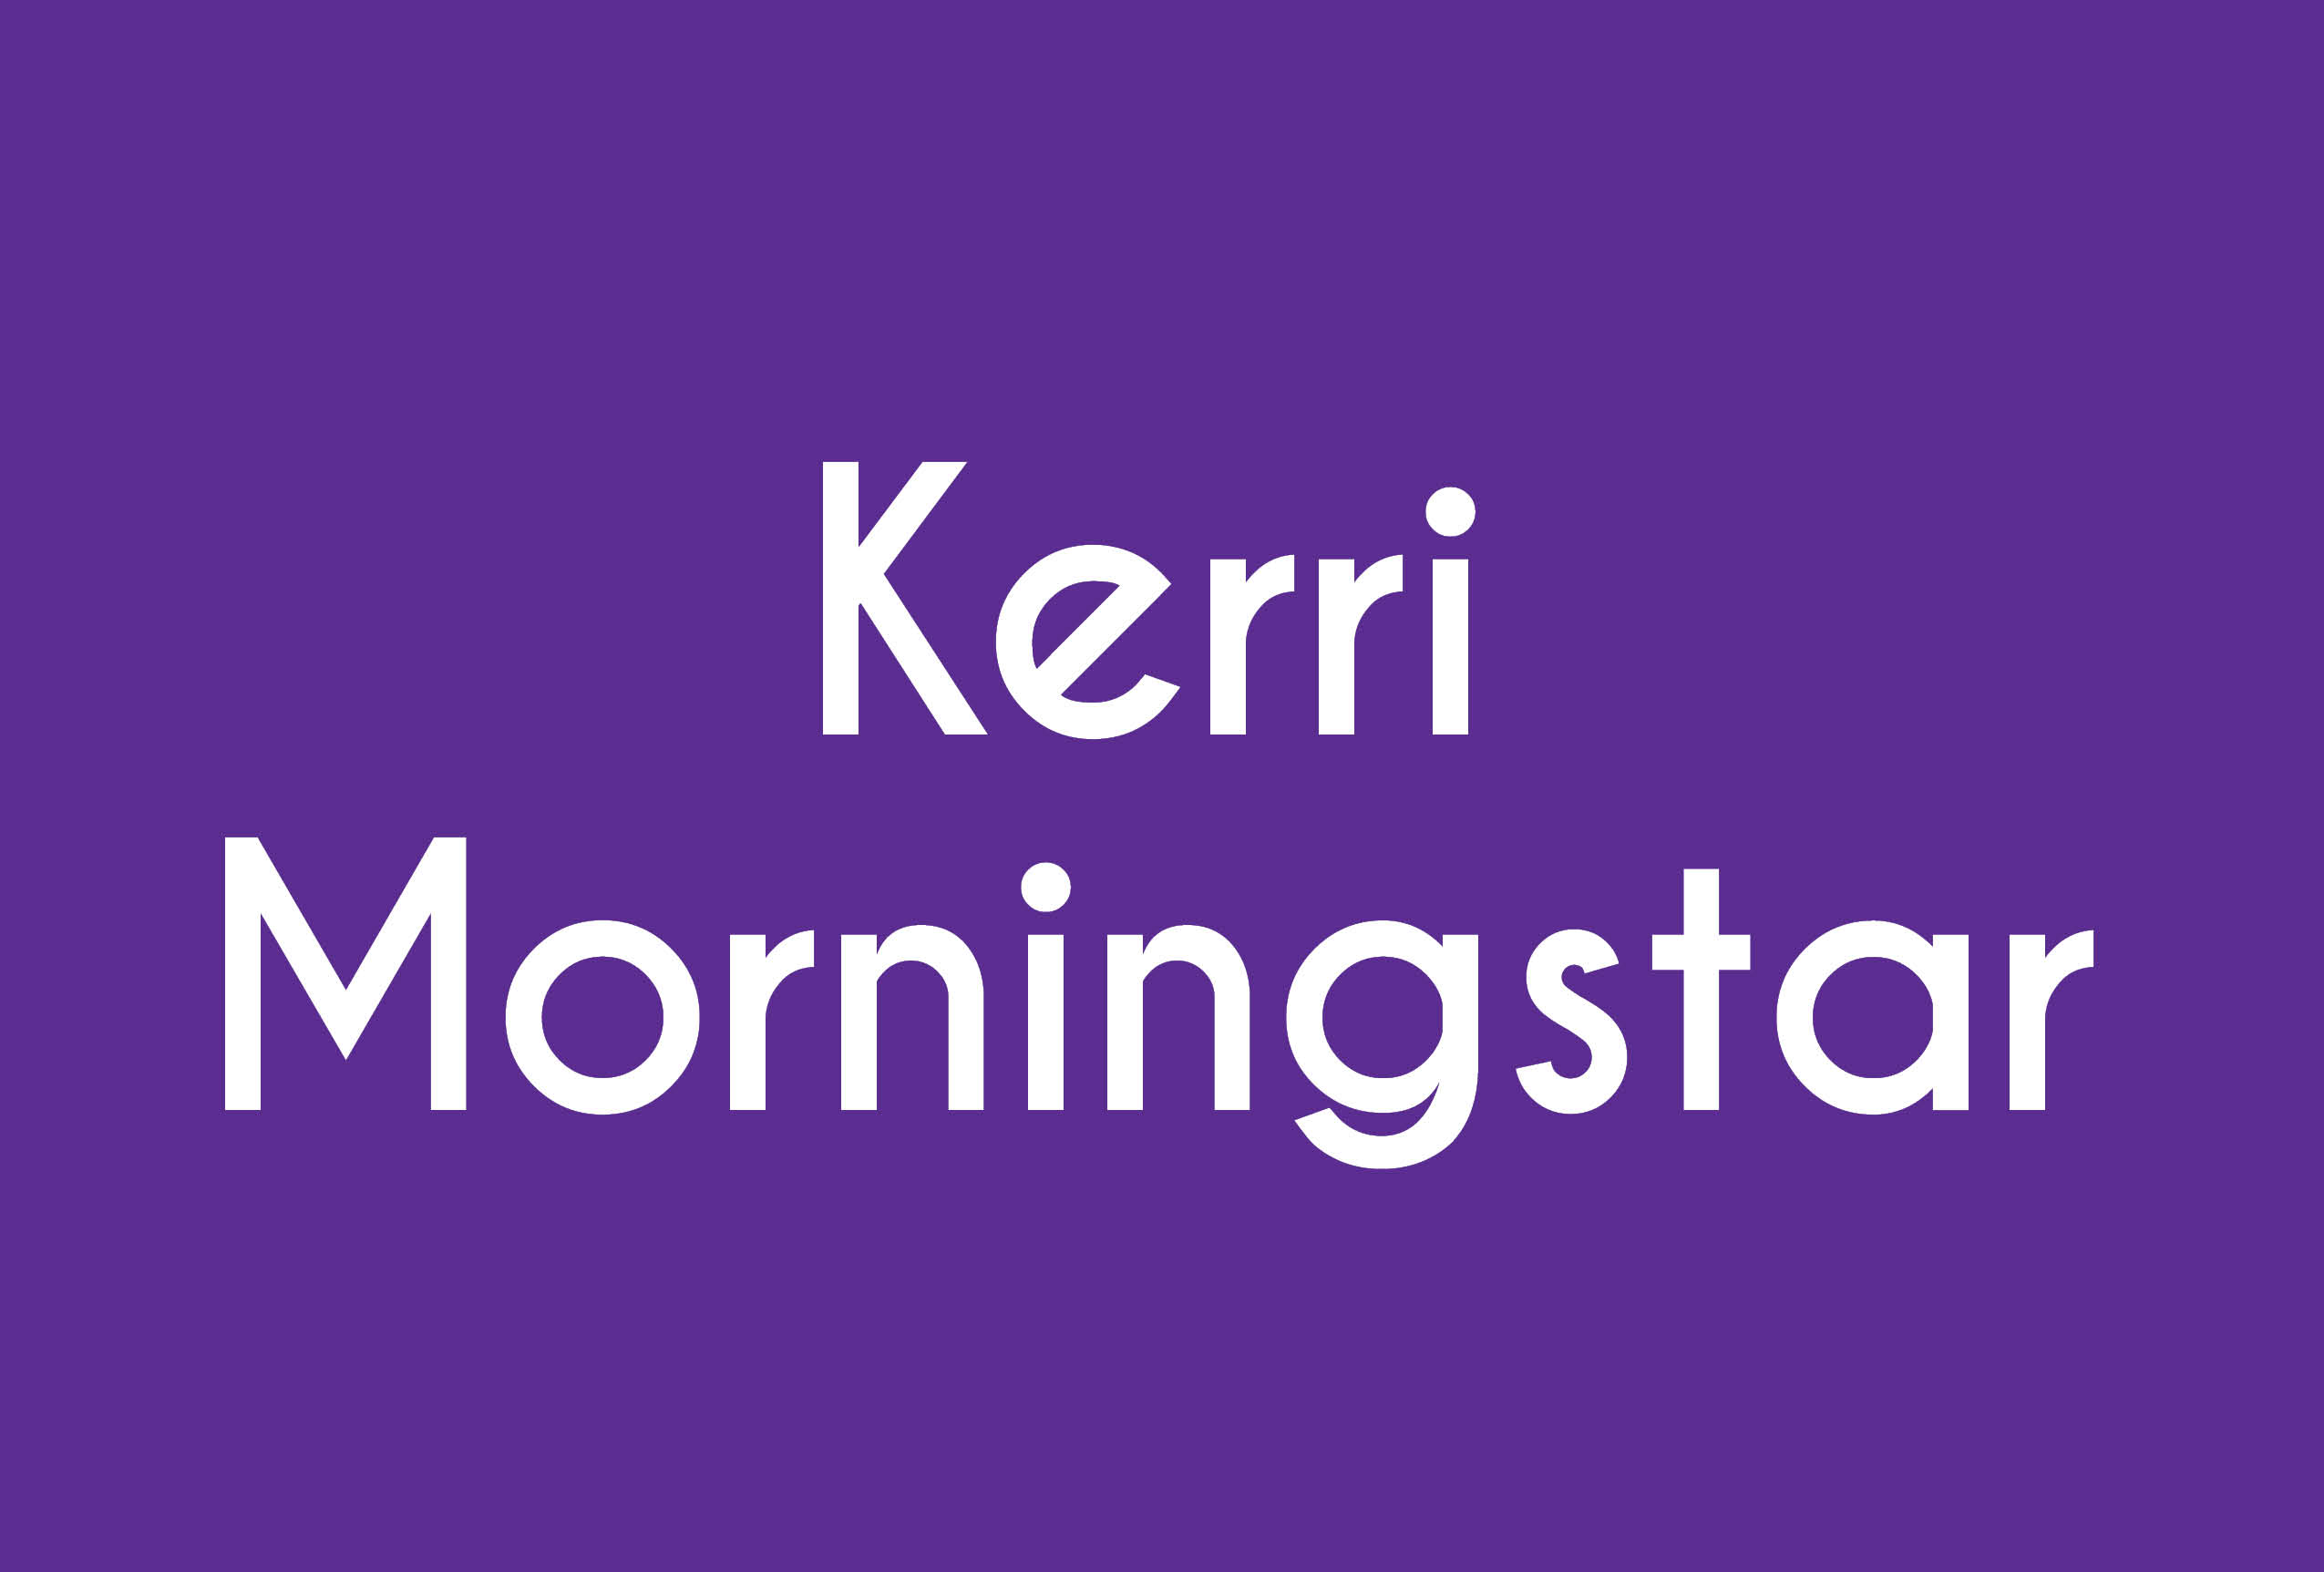 Kerri Morningstar